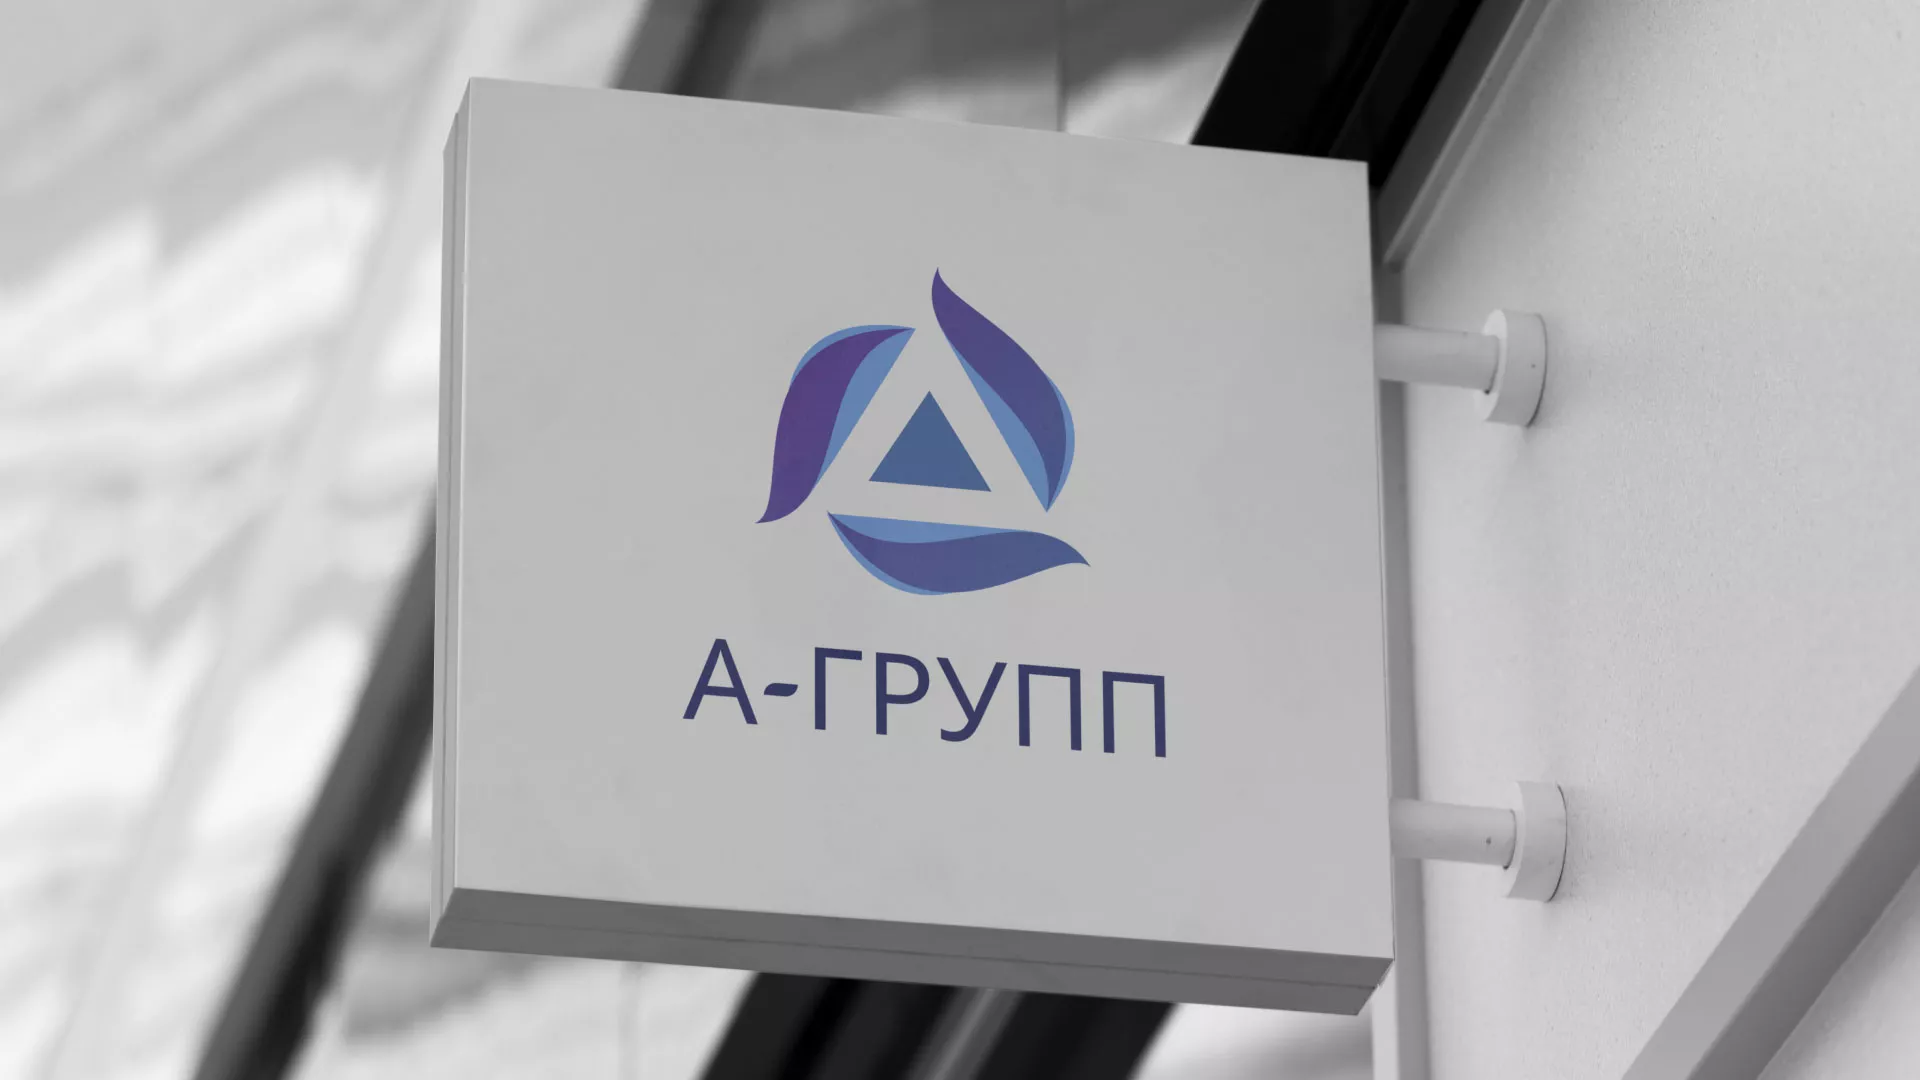 Создание логотипа компании «А-ГРУПП» в Вышнем Волочке